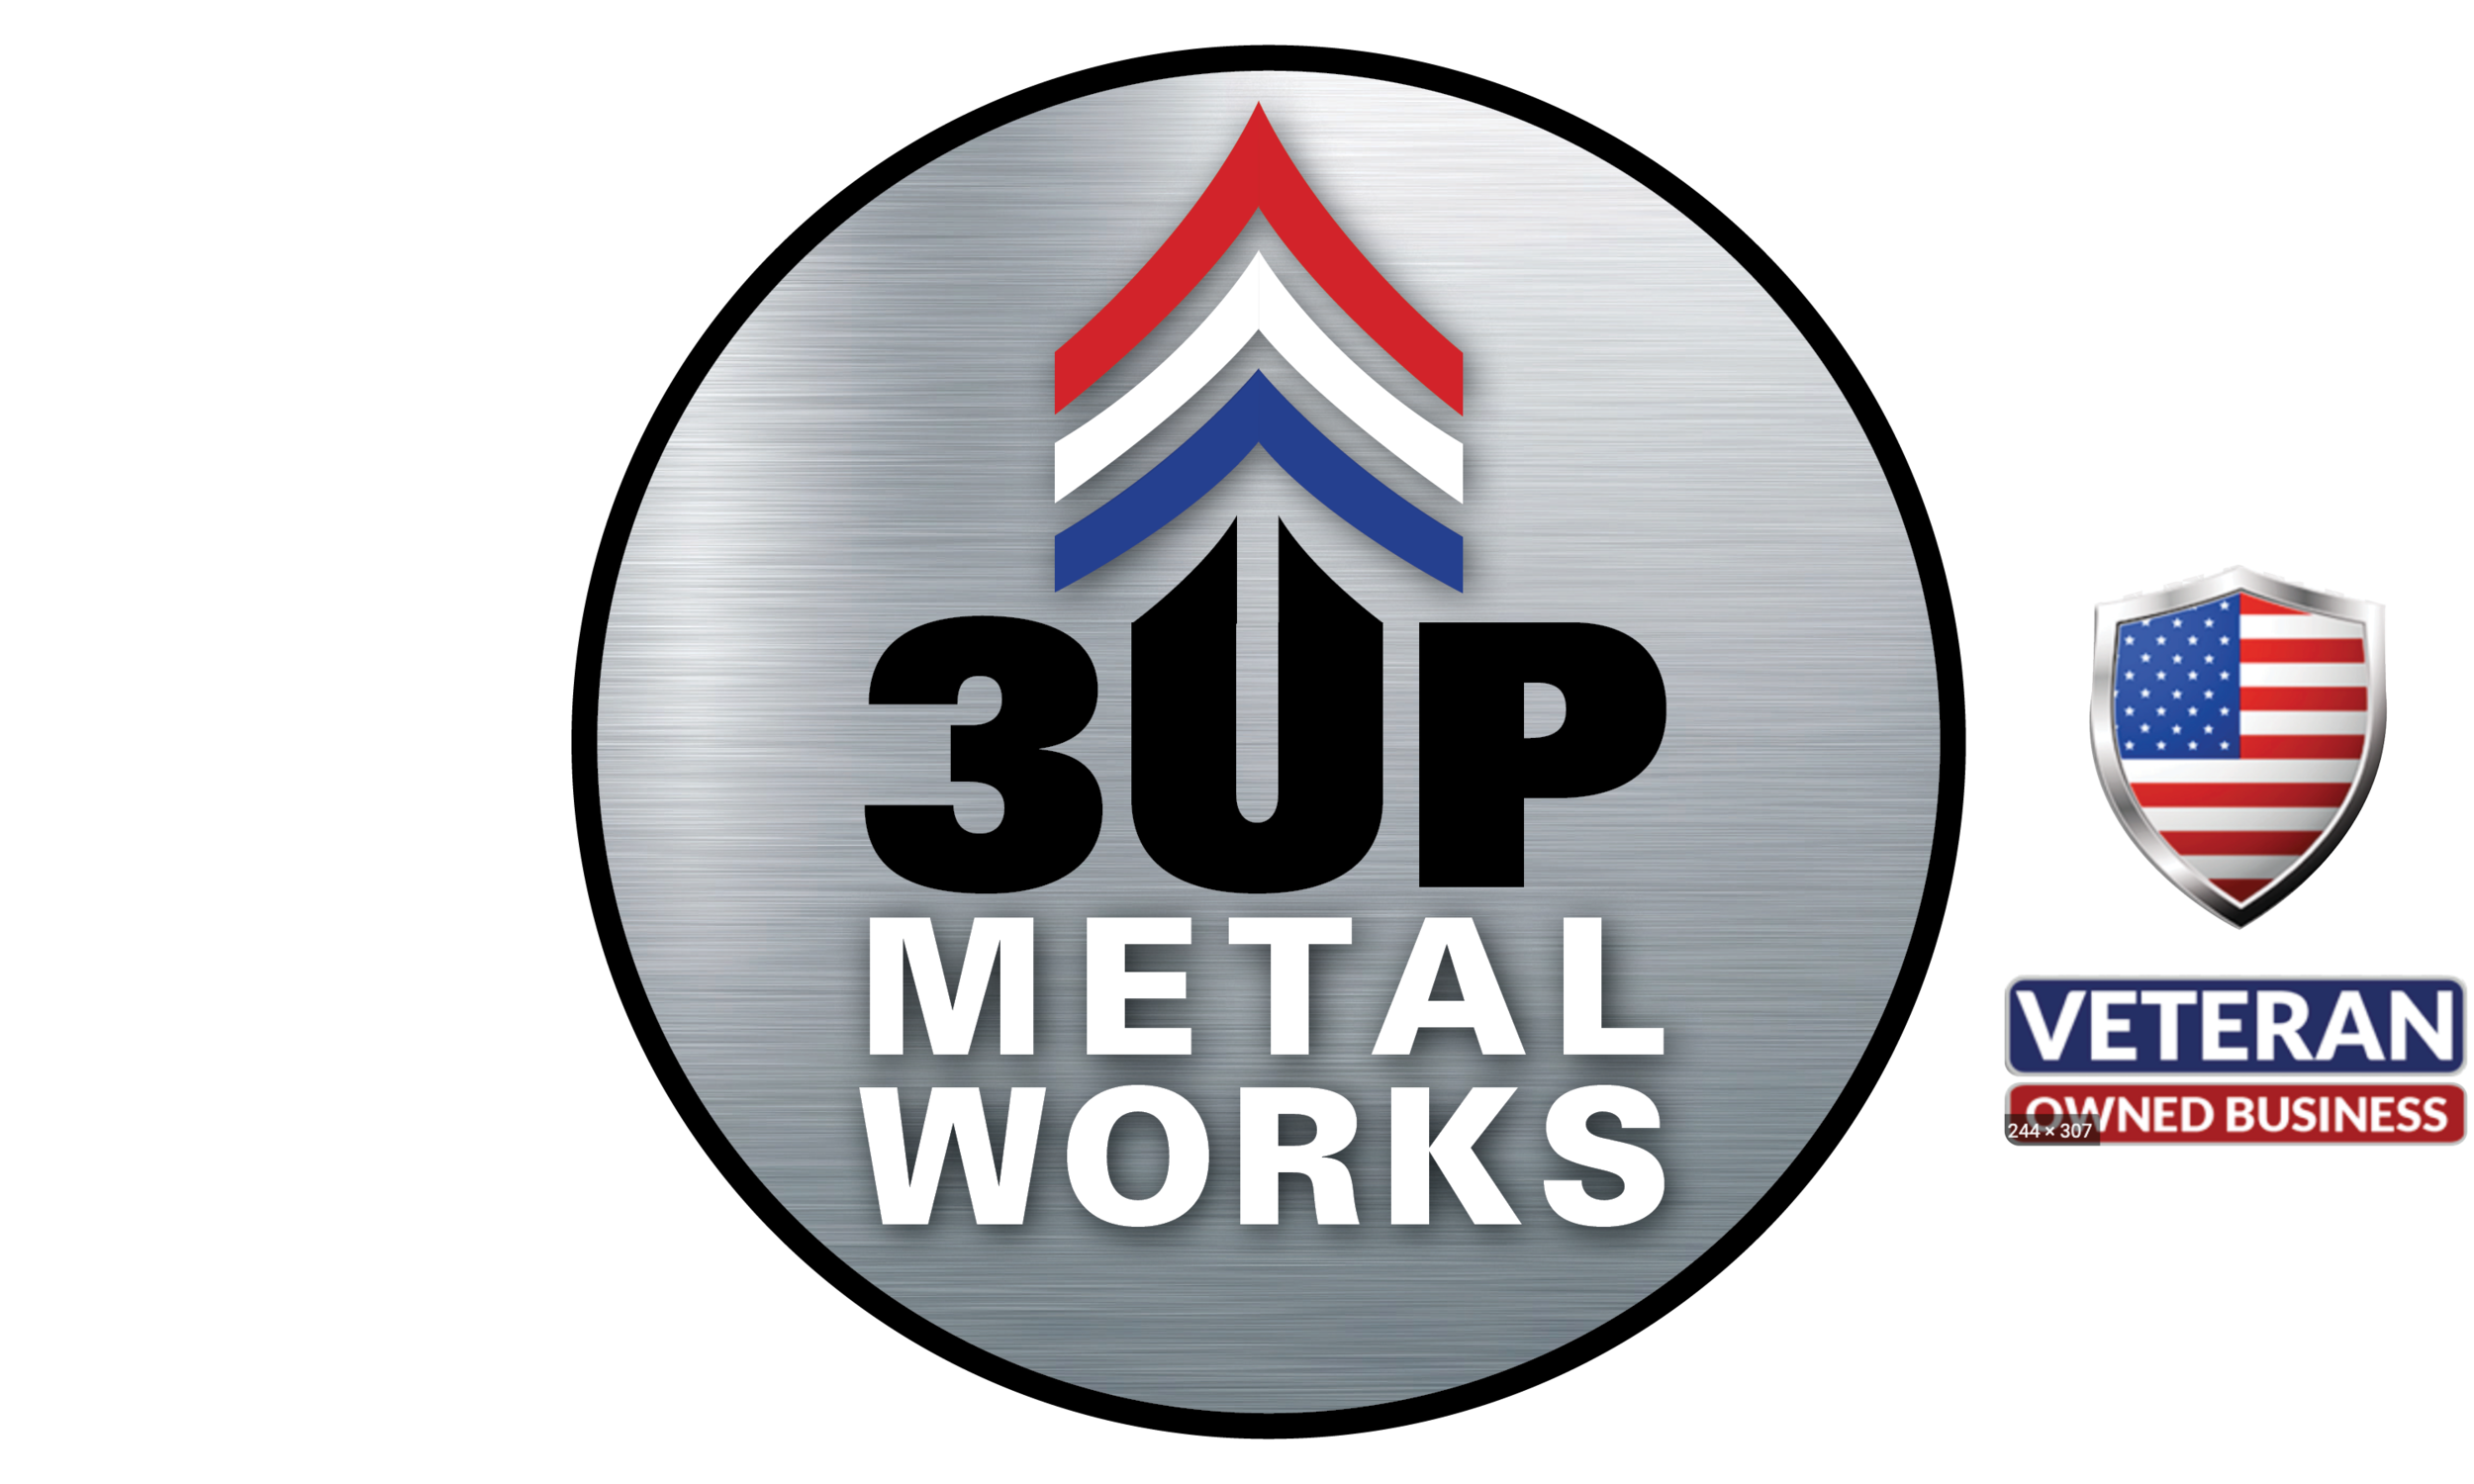 3 Up Metal Works